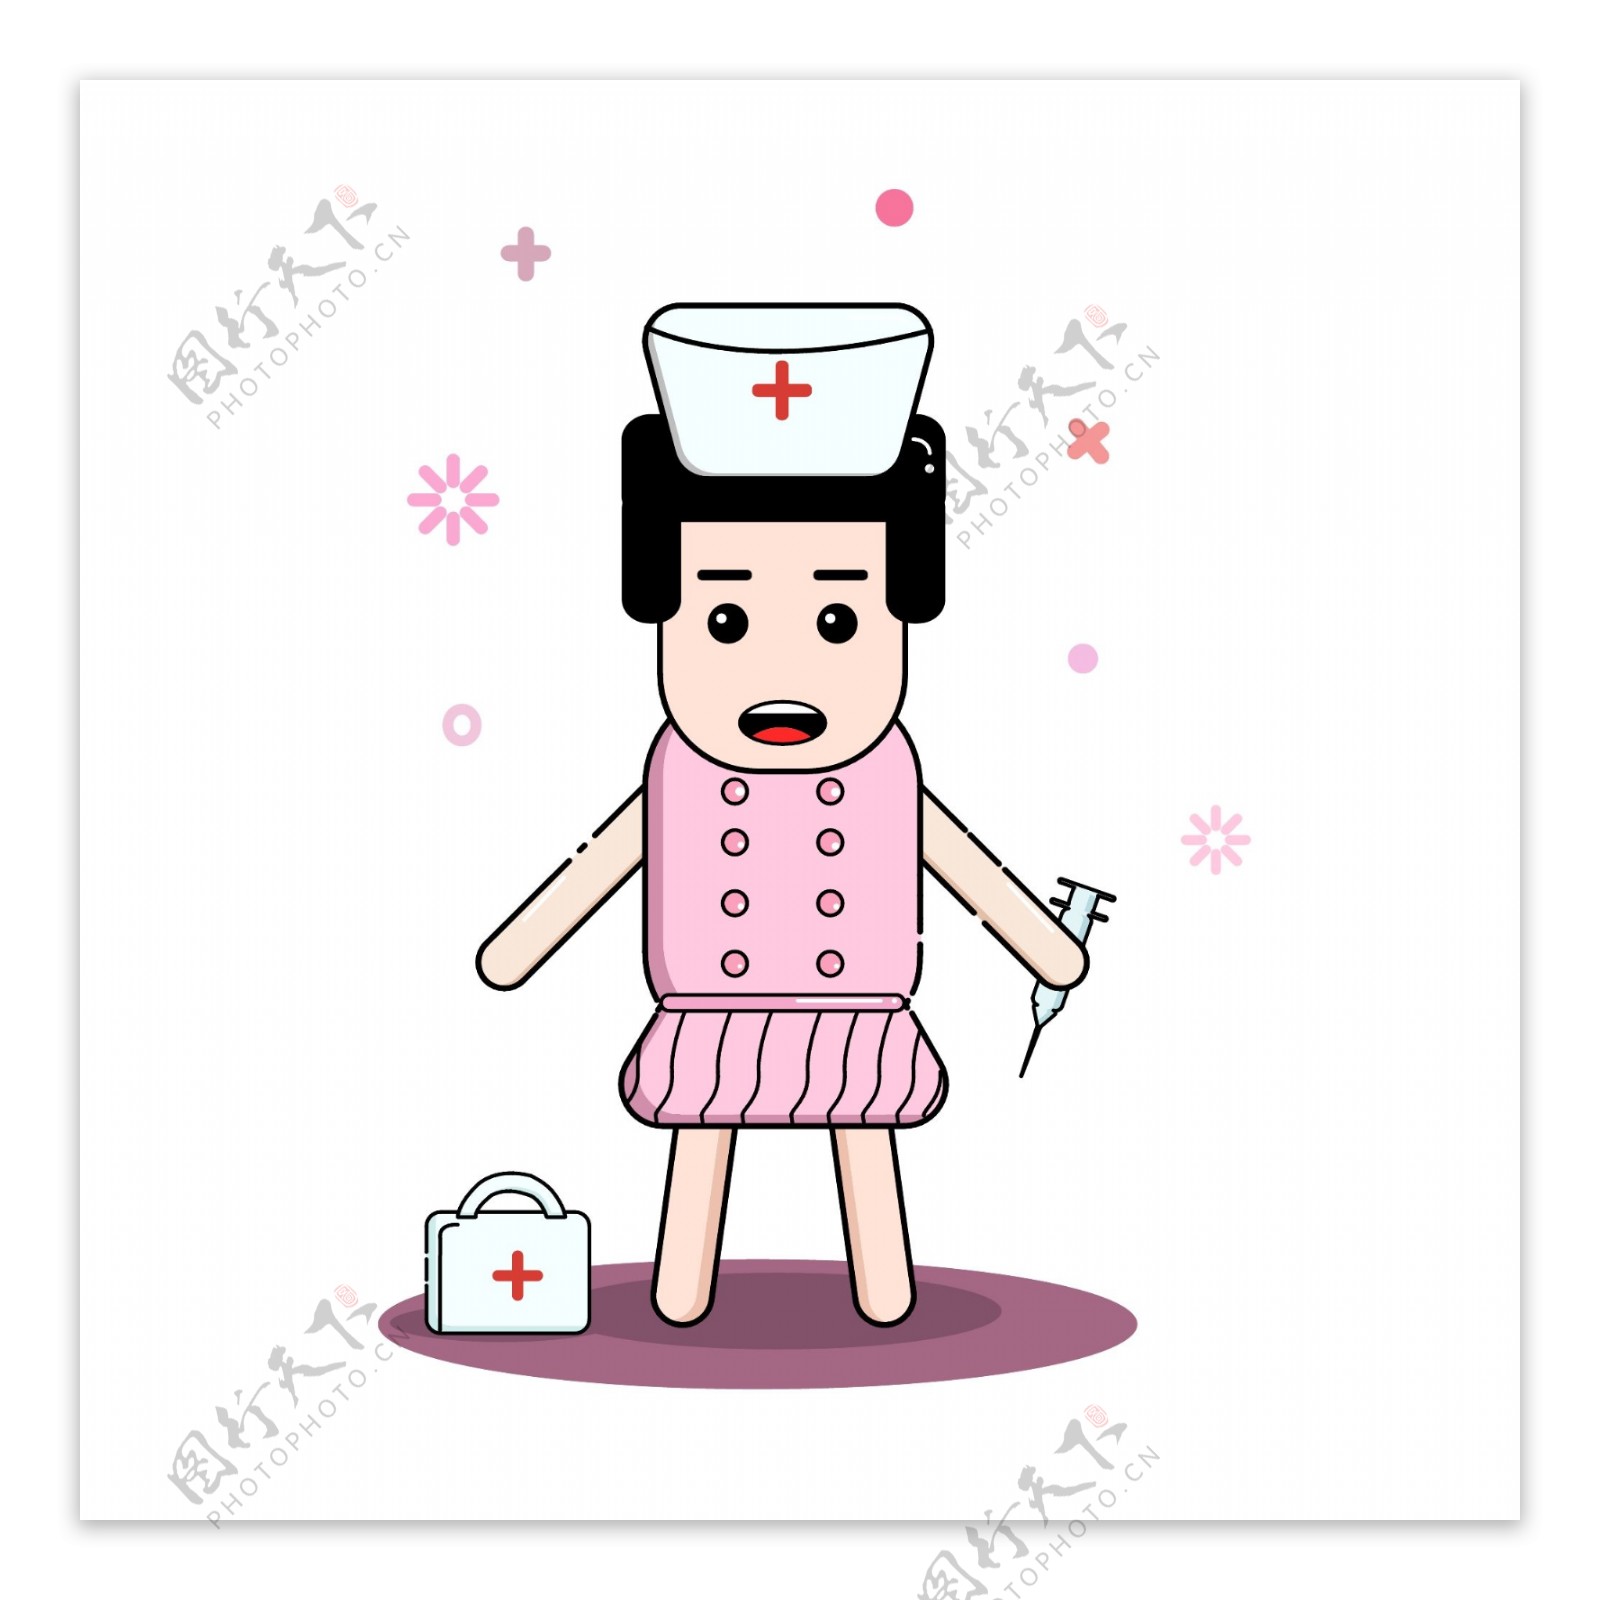 MBE人物护士药箱可爱卡通可商用元素